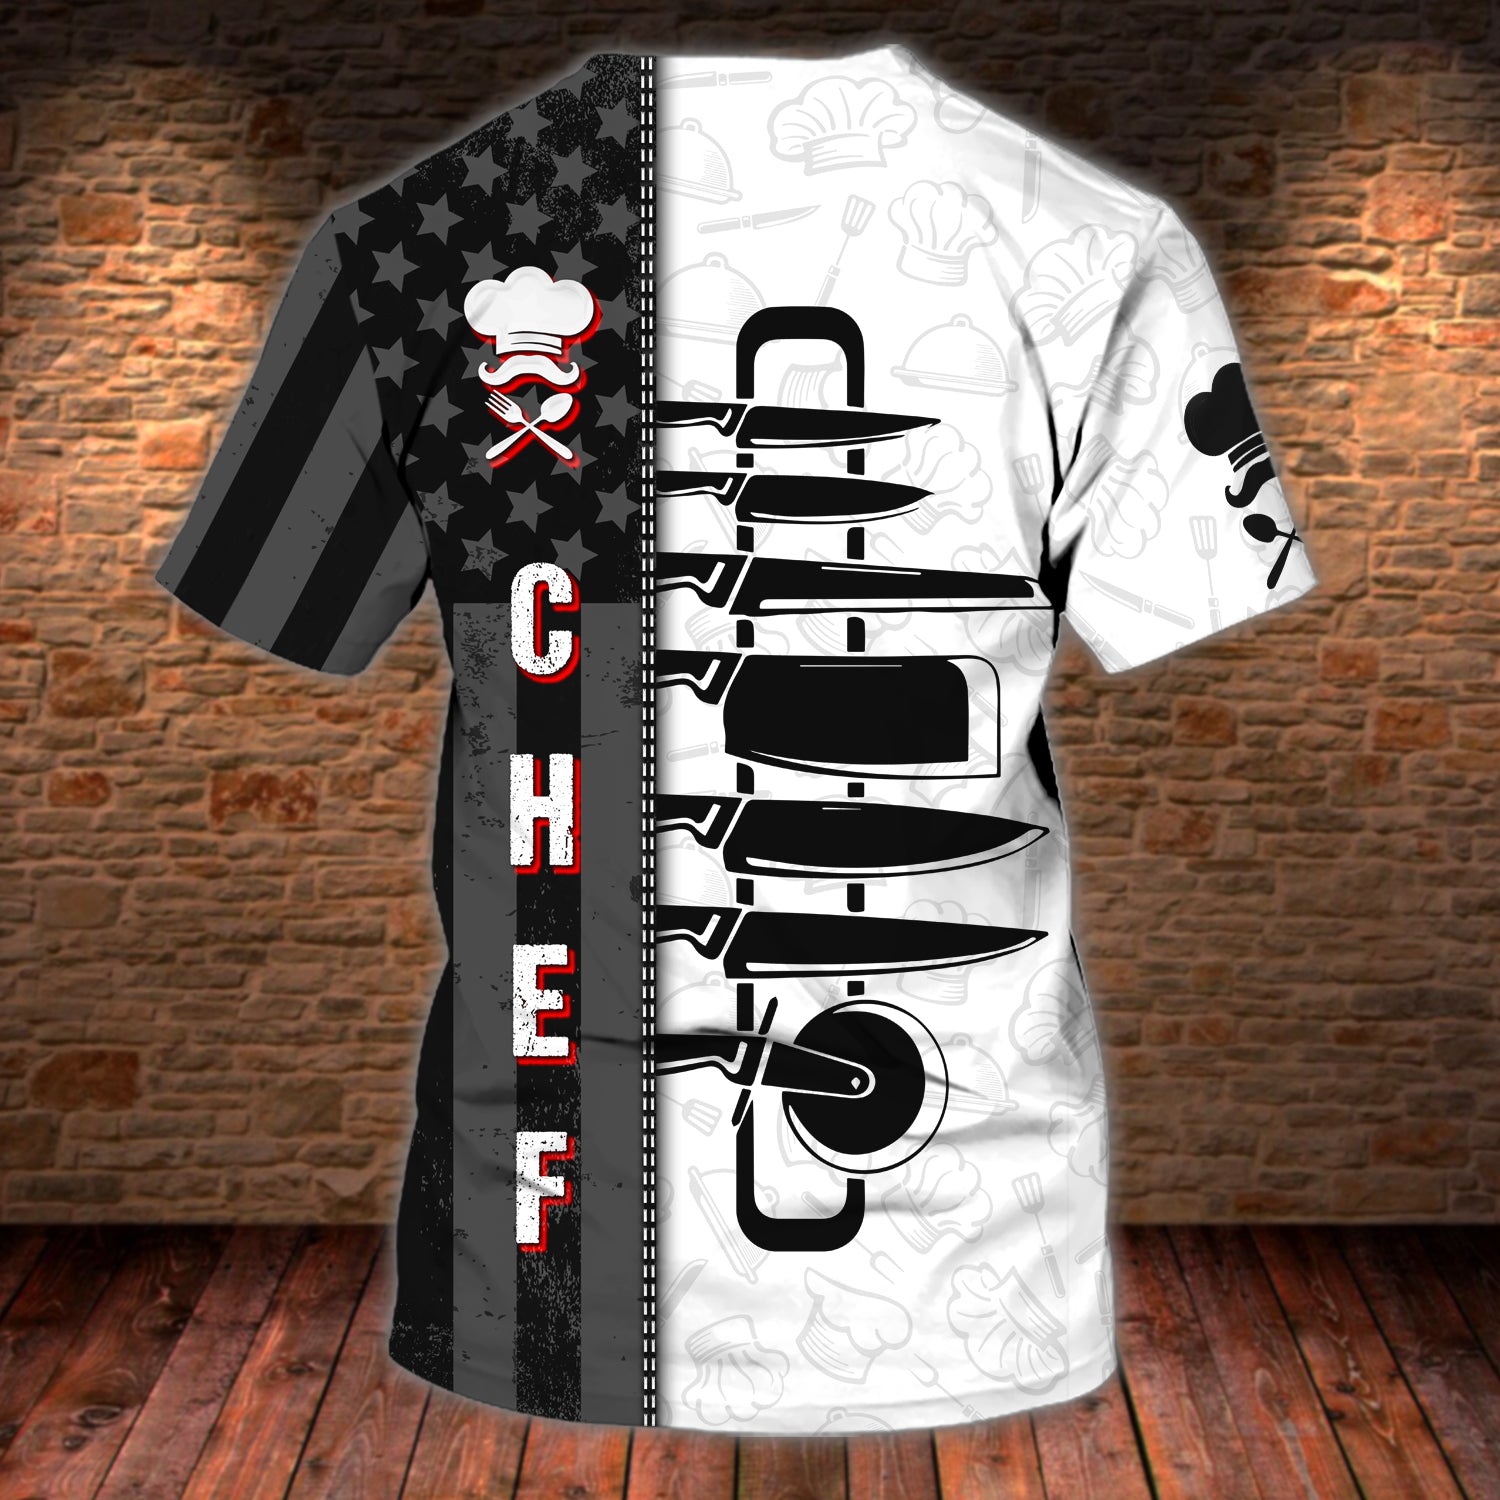 CHEF - Personalized Name 3D Tshirt 02 - RINC98